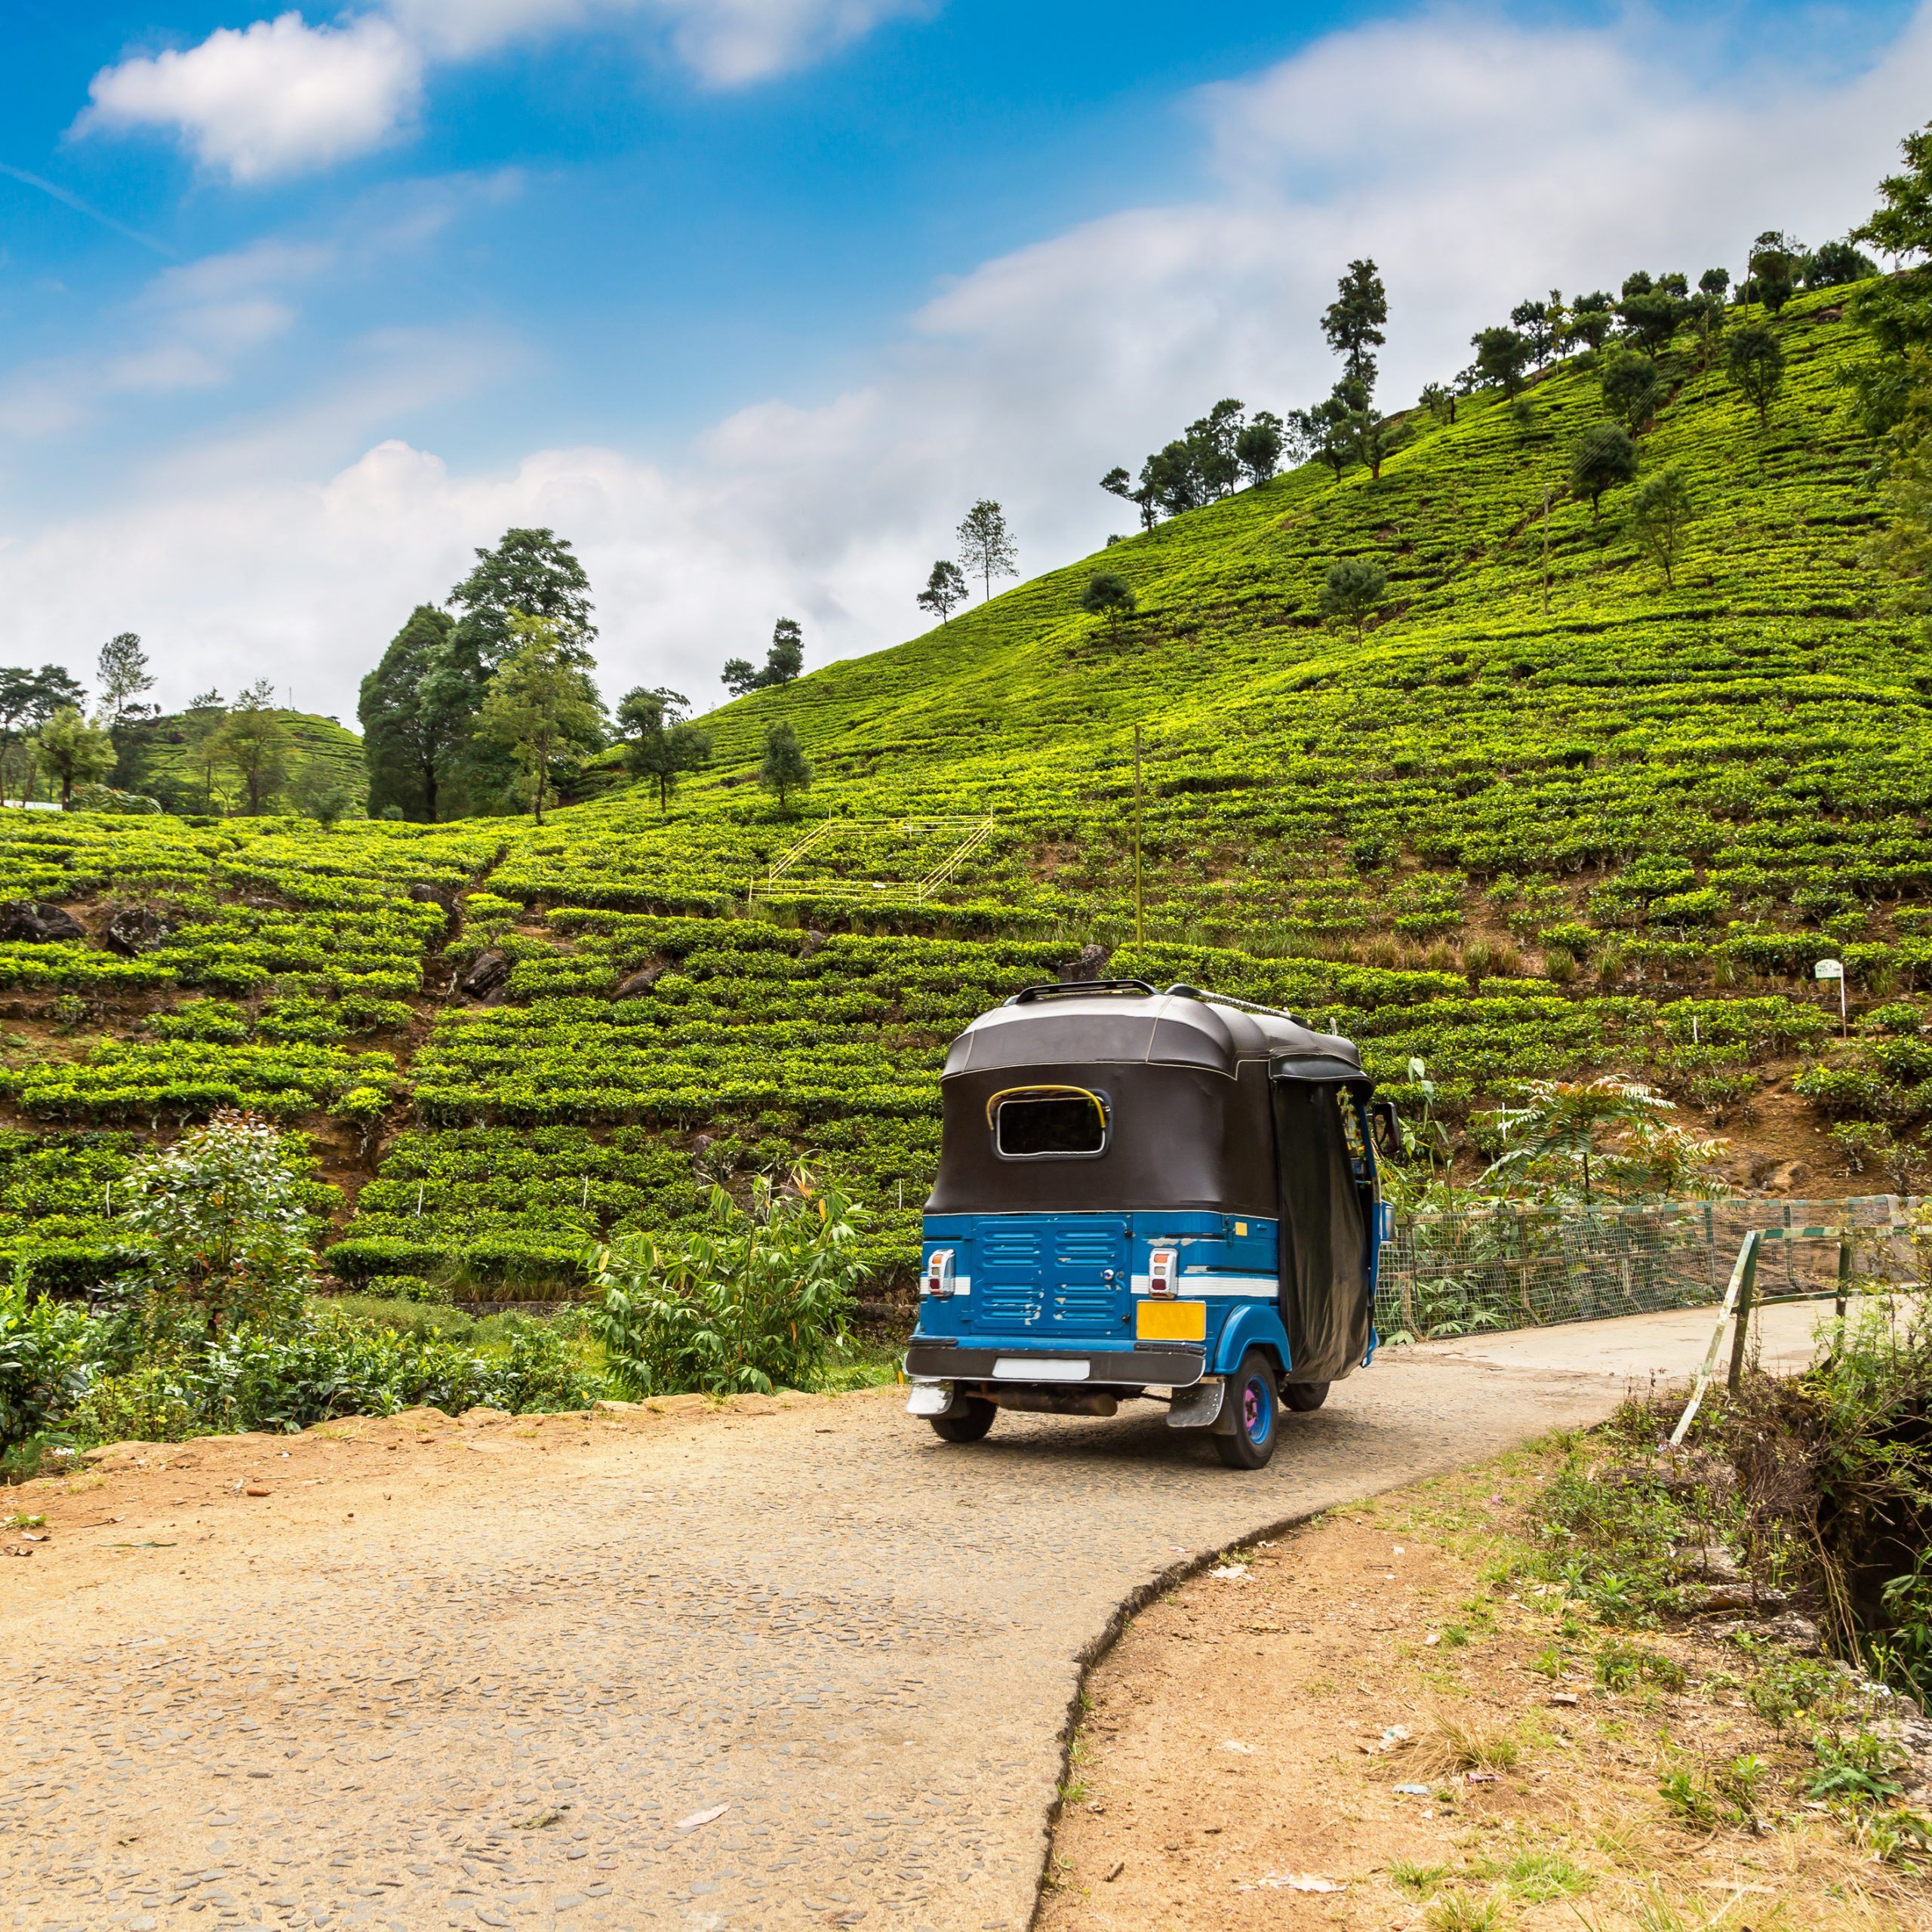 Tuk tuk at the Tea plantations in Nuwara Eliya, Sri Lanka